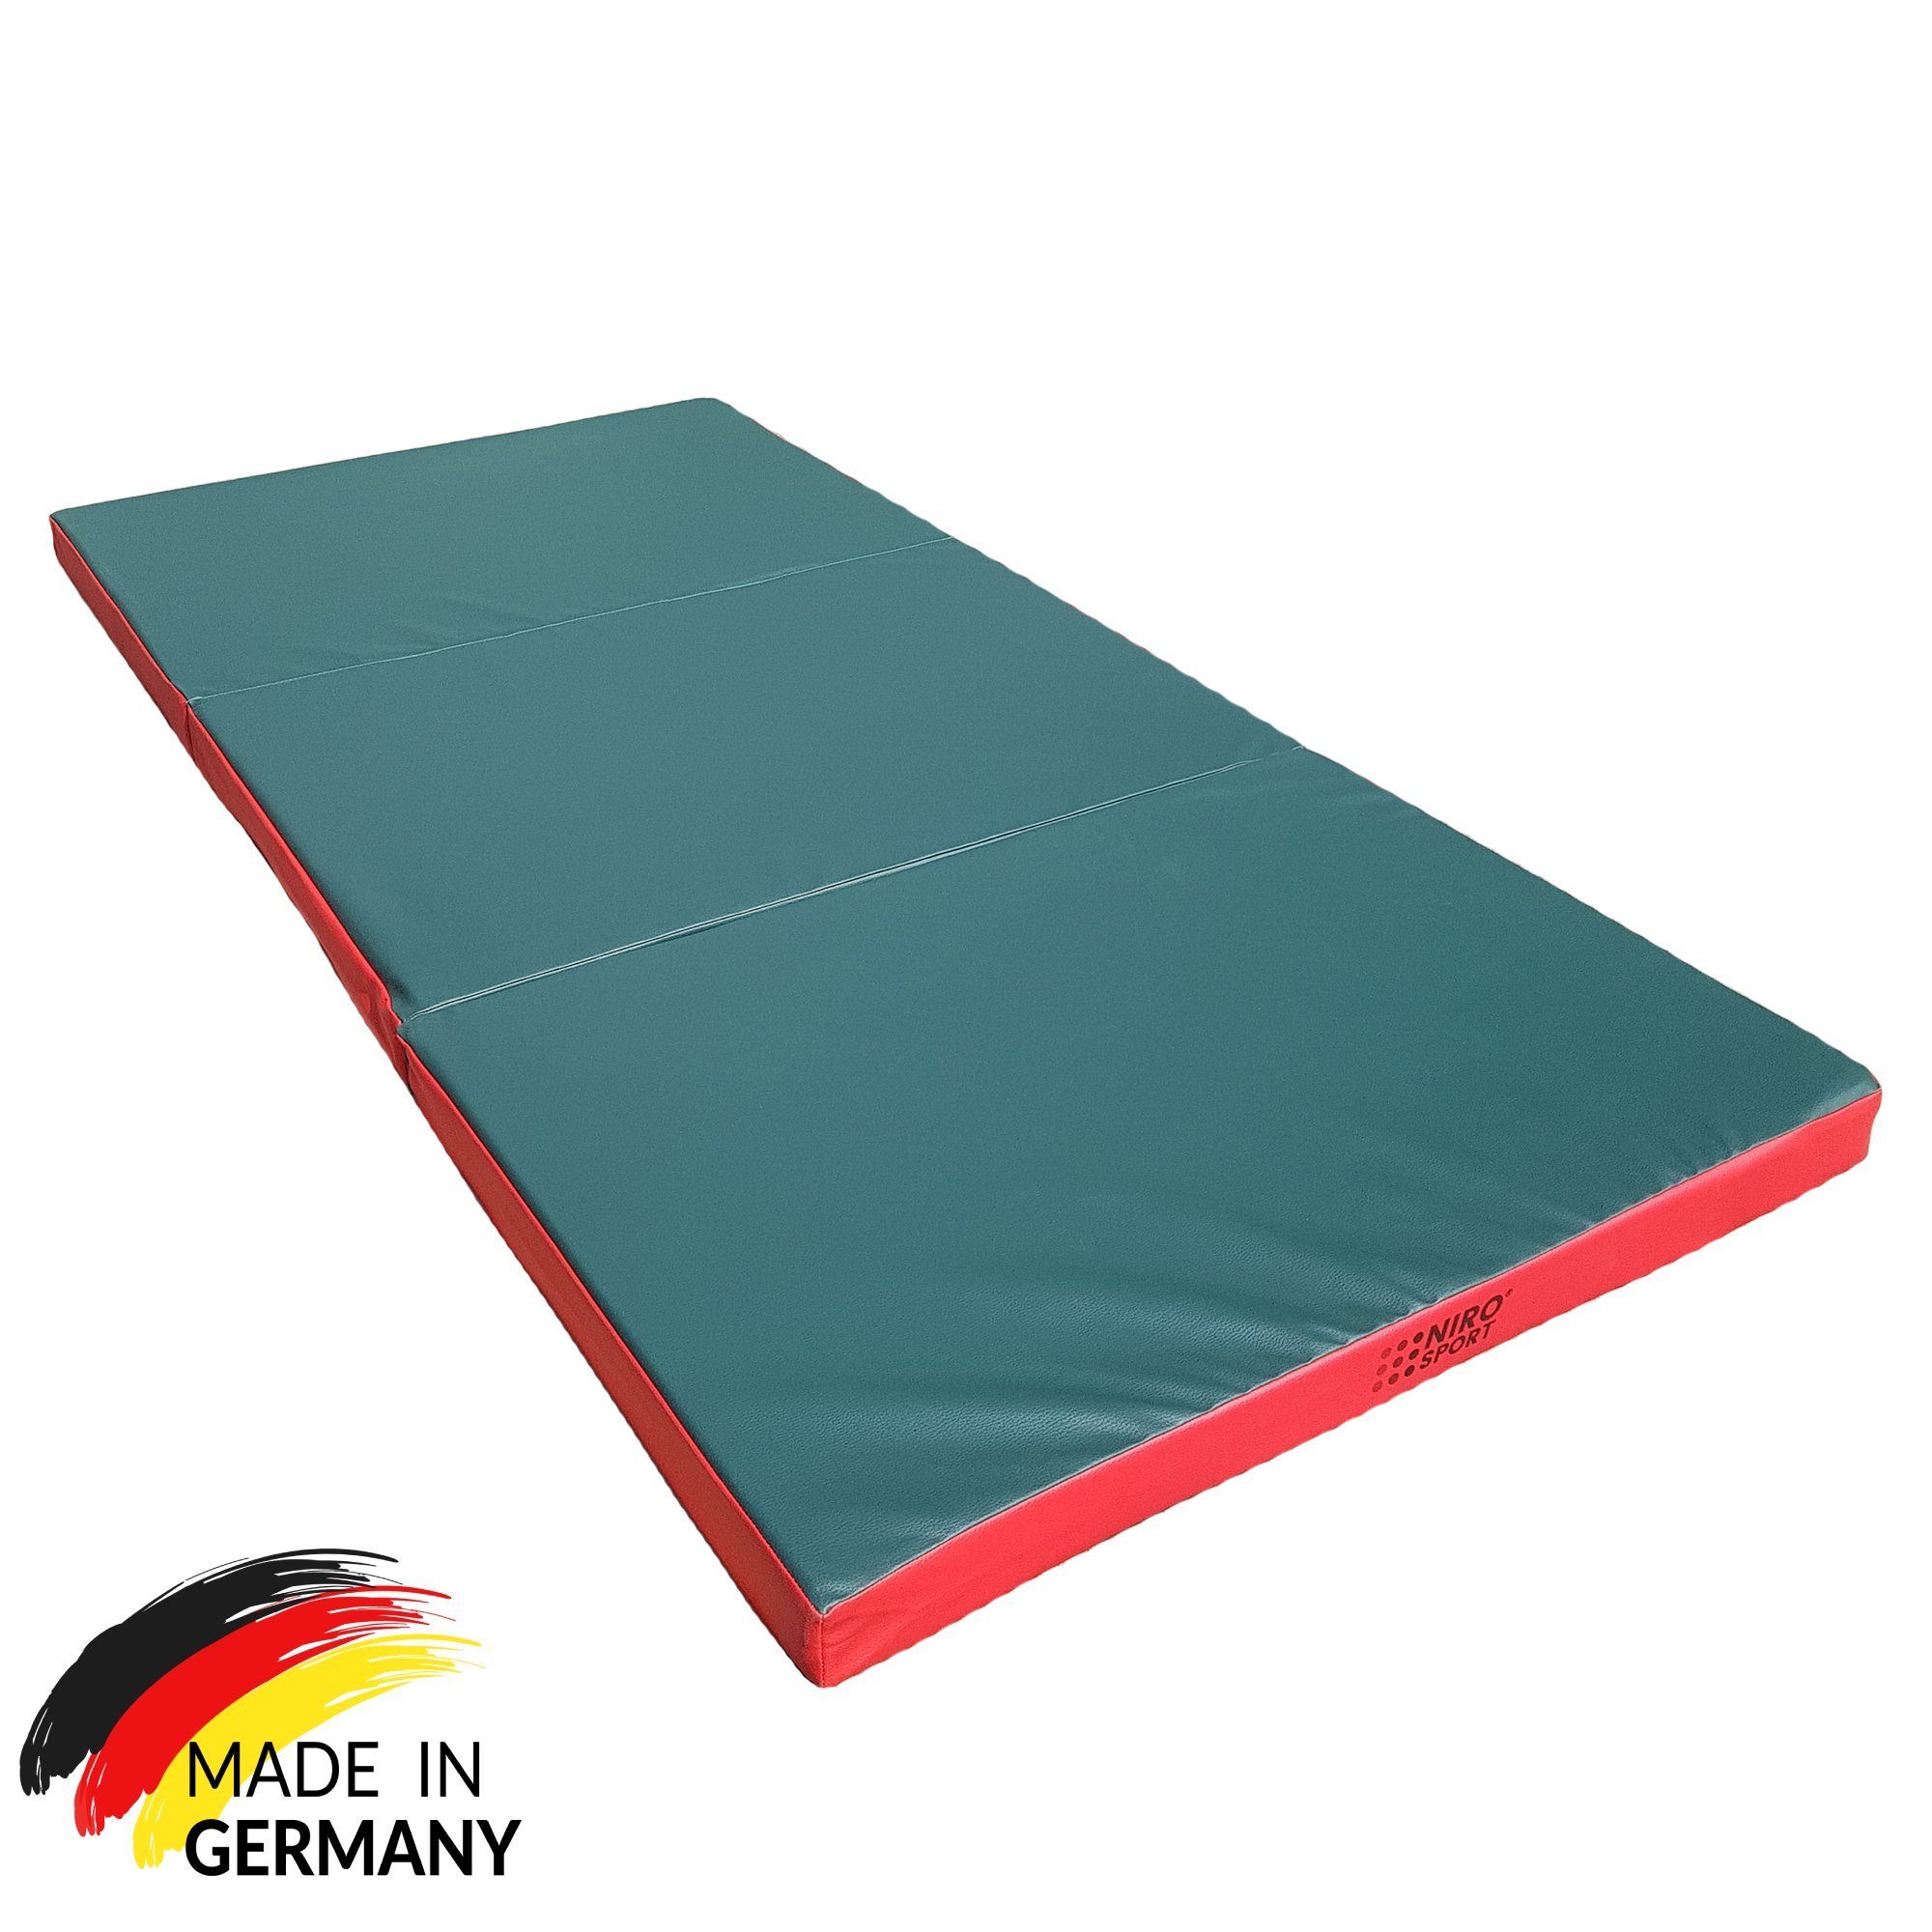 NiroSport Weichbodenmatte Turnmatte Gymnastikmatte Schutzmatte Fitnessmatte grün 150x100x8cm robust abwaschbar, (1er-Pack)